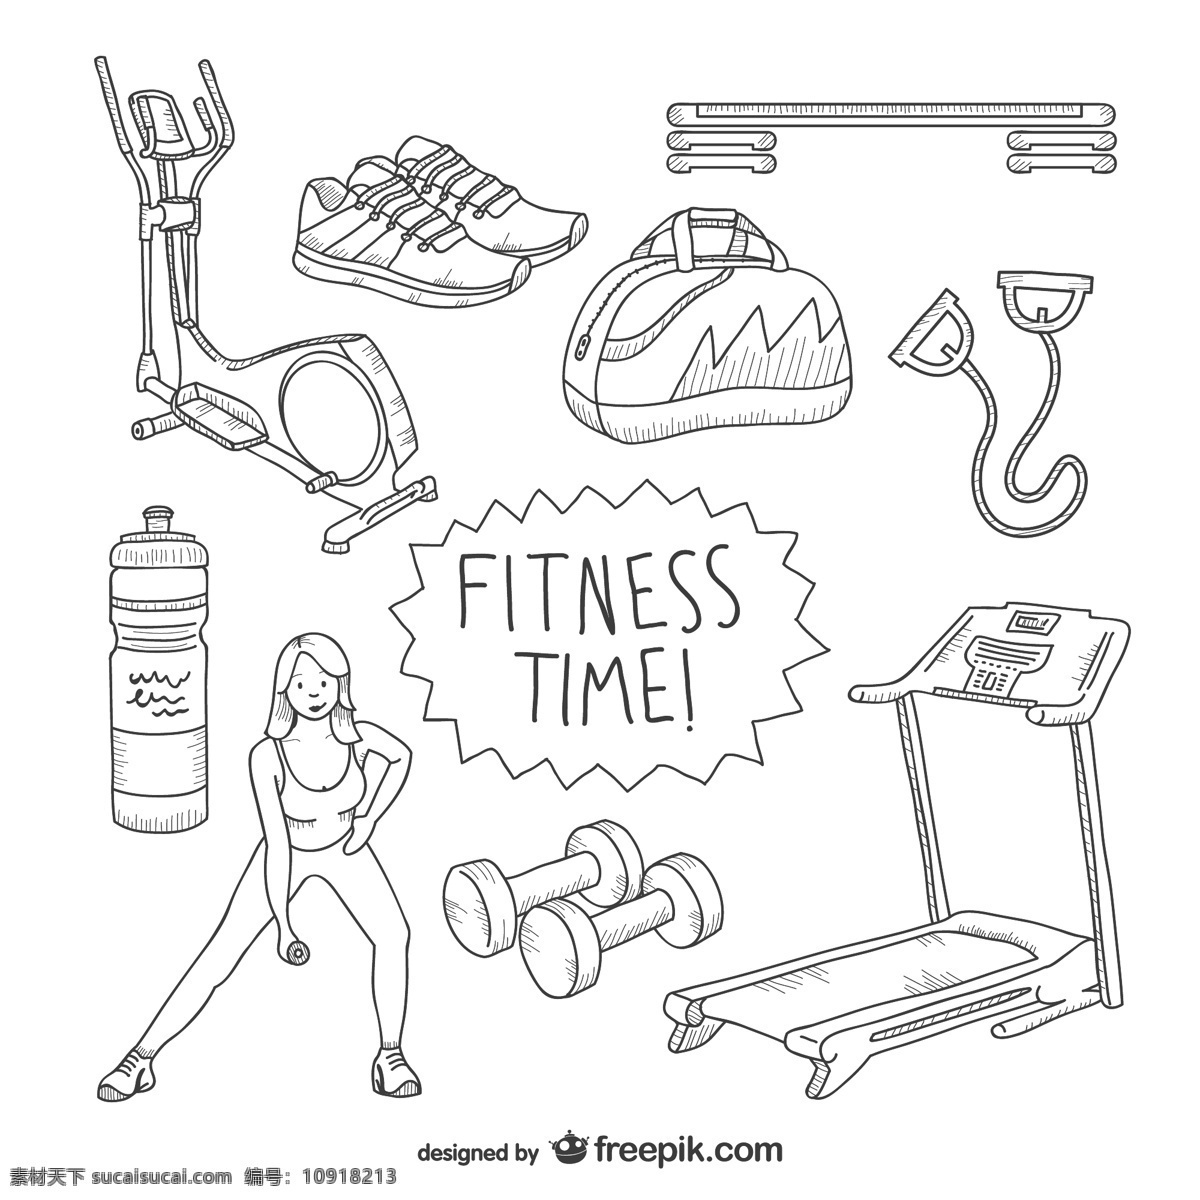 健身 时间 收拾 图纸 体育 健身房 运动 素描 绘画 绘图 抽纱